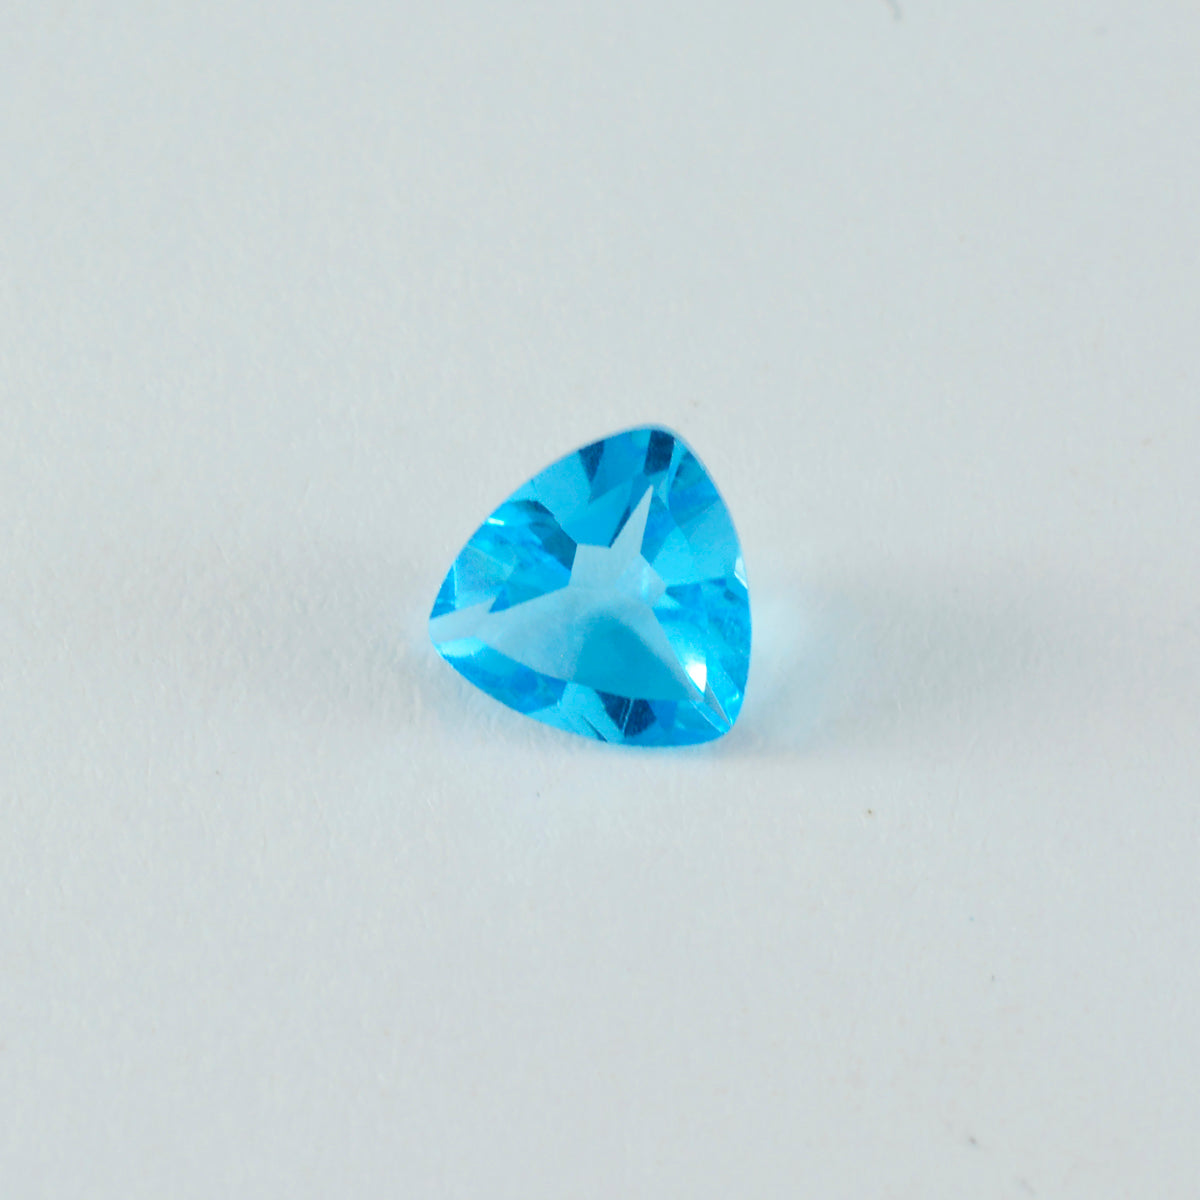 Riyogems 1 Stück blauer Topas, CZ, facettiert, 12 x 12 mm, Billionenform, Edelstein von erstaunlicher Qualität